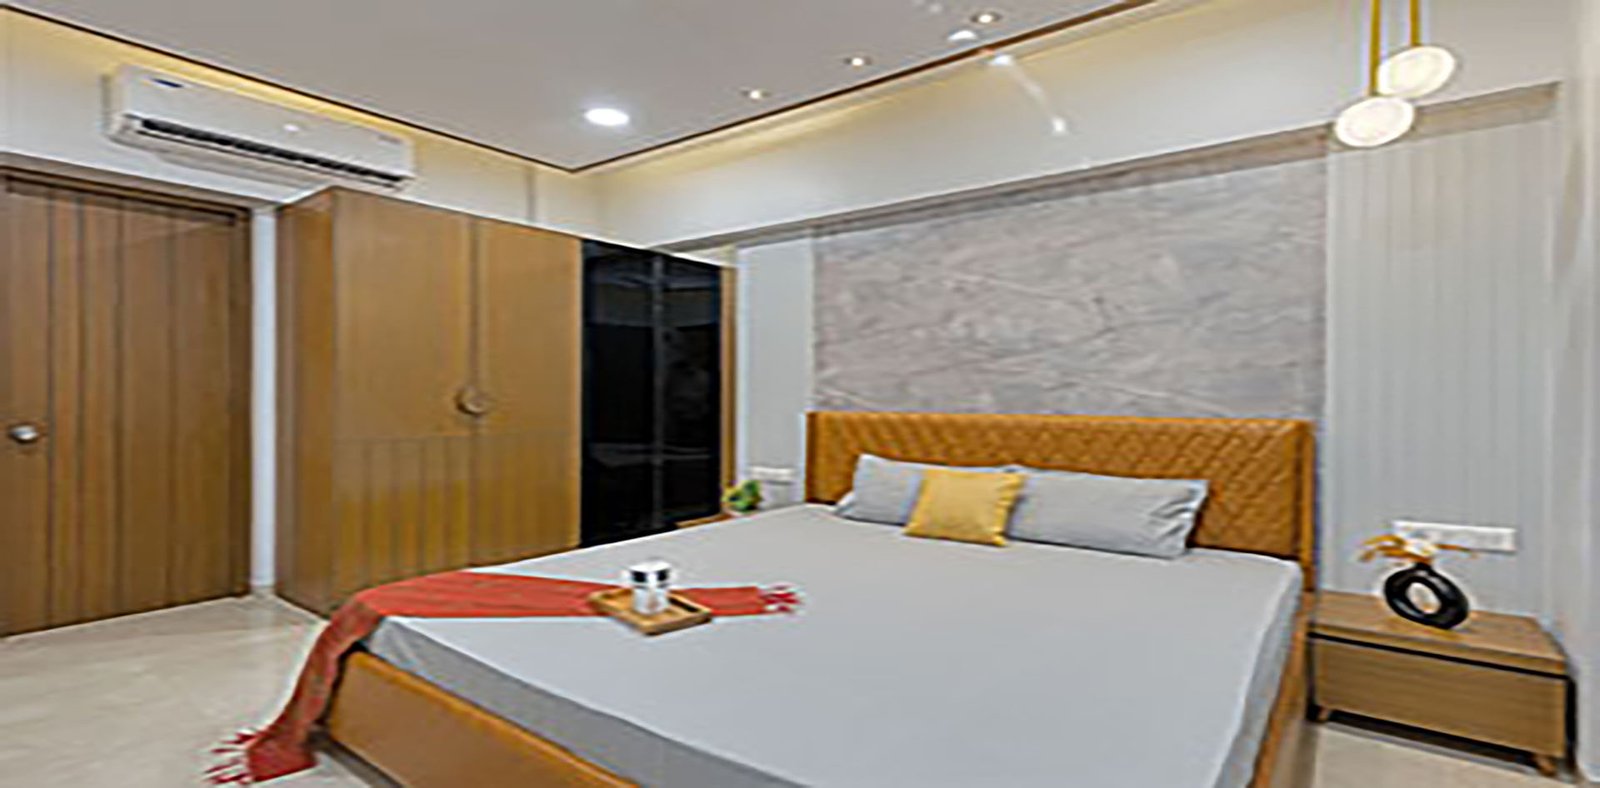  Bedroom Design Img